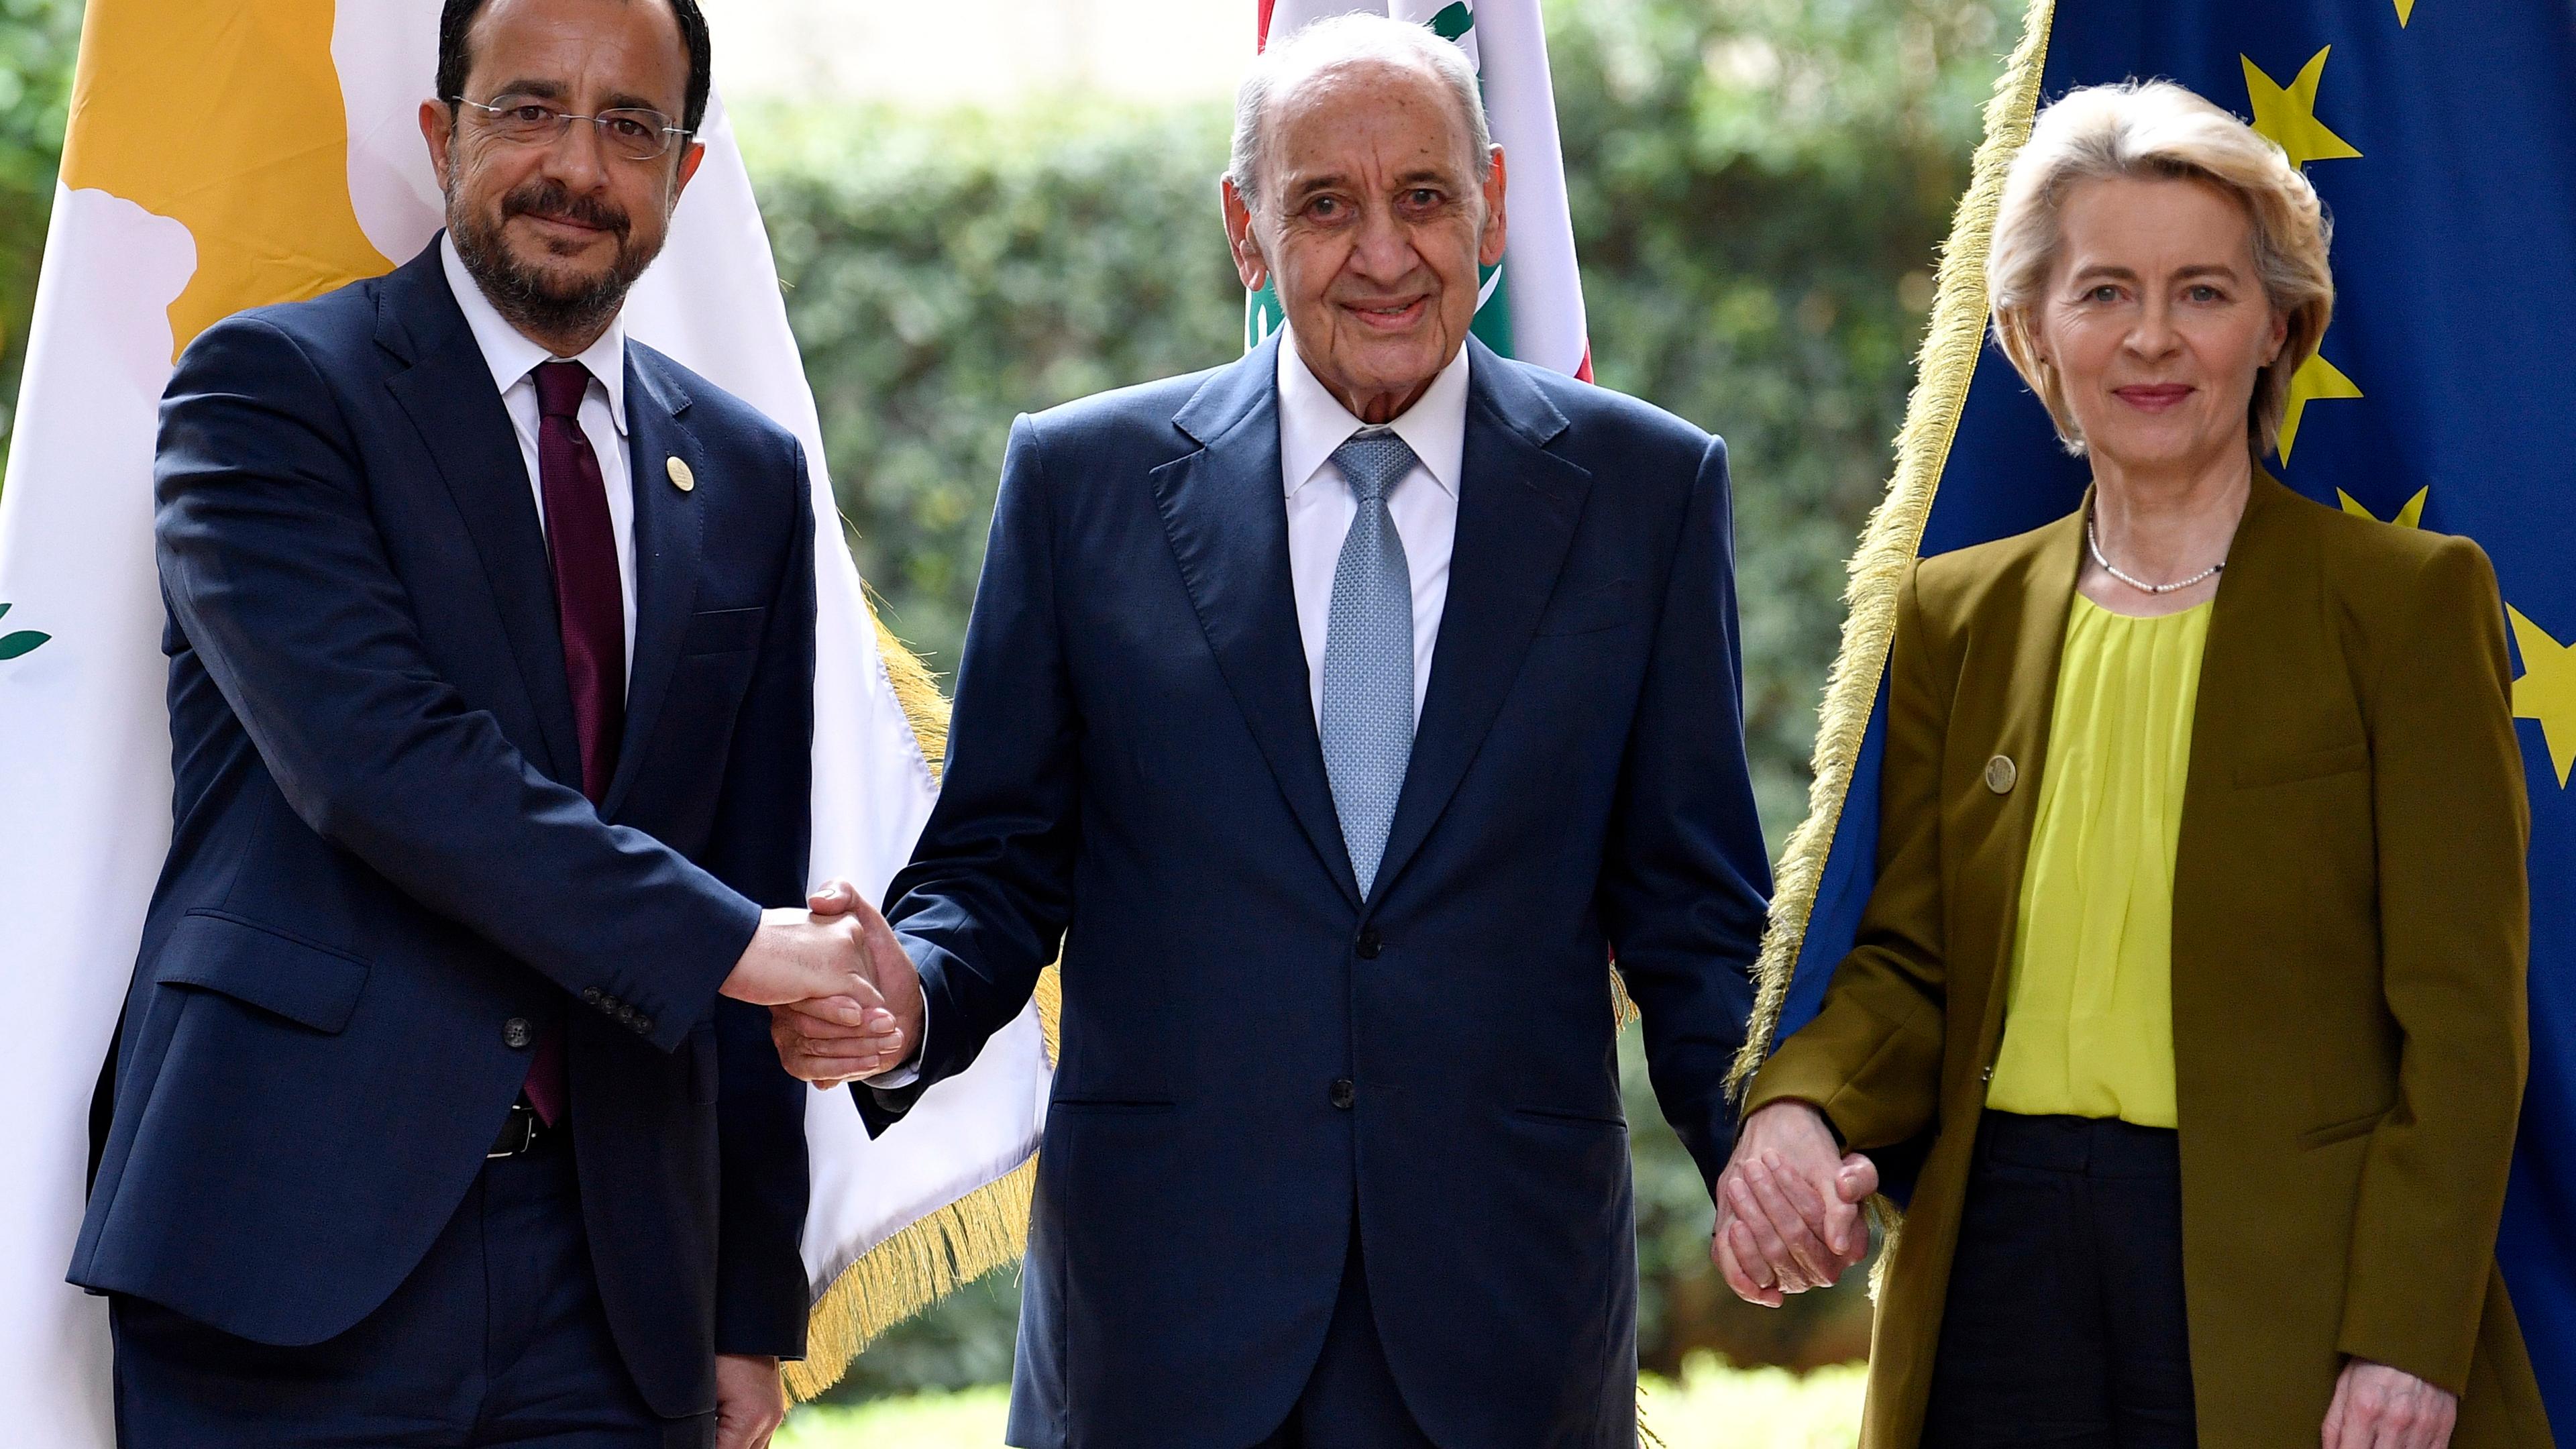 Cypriot President Nikos Christodoulides and EU President Ursula von der Leyen visit Beirut